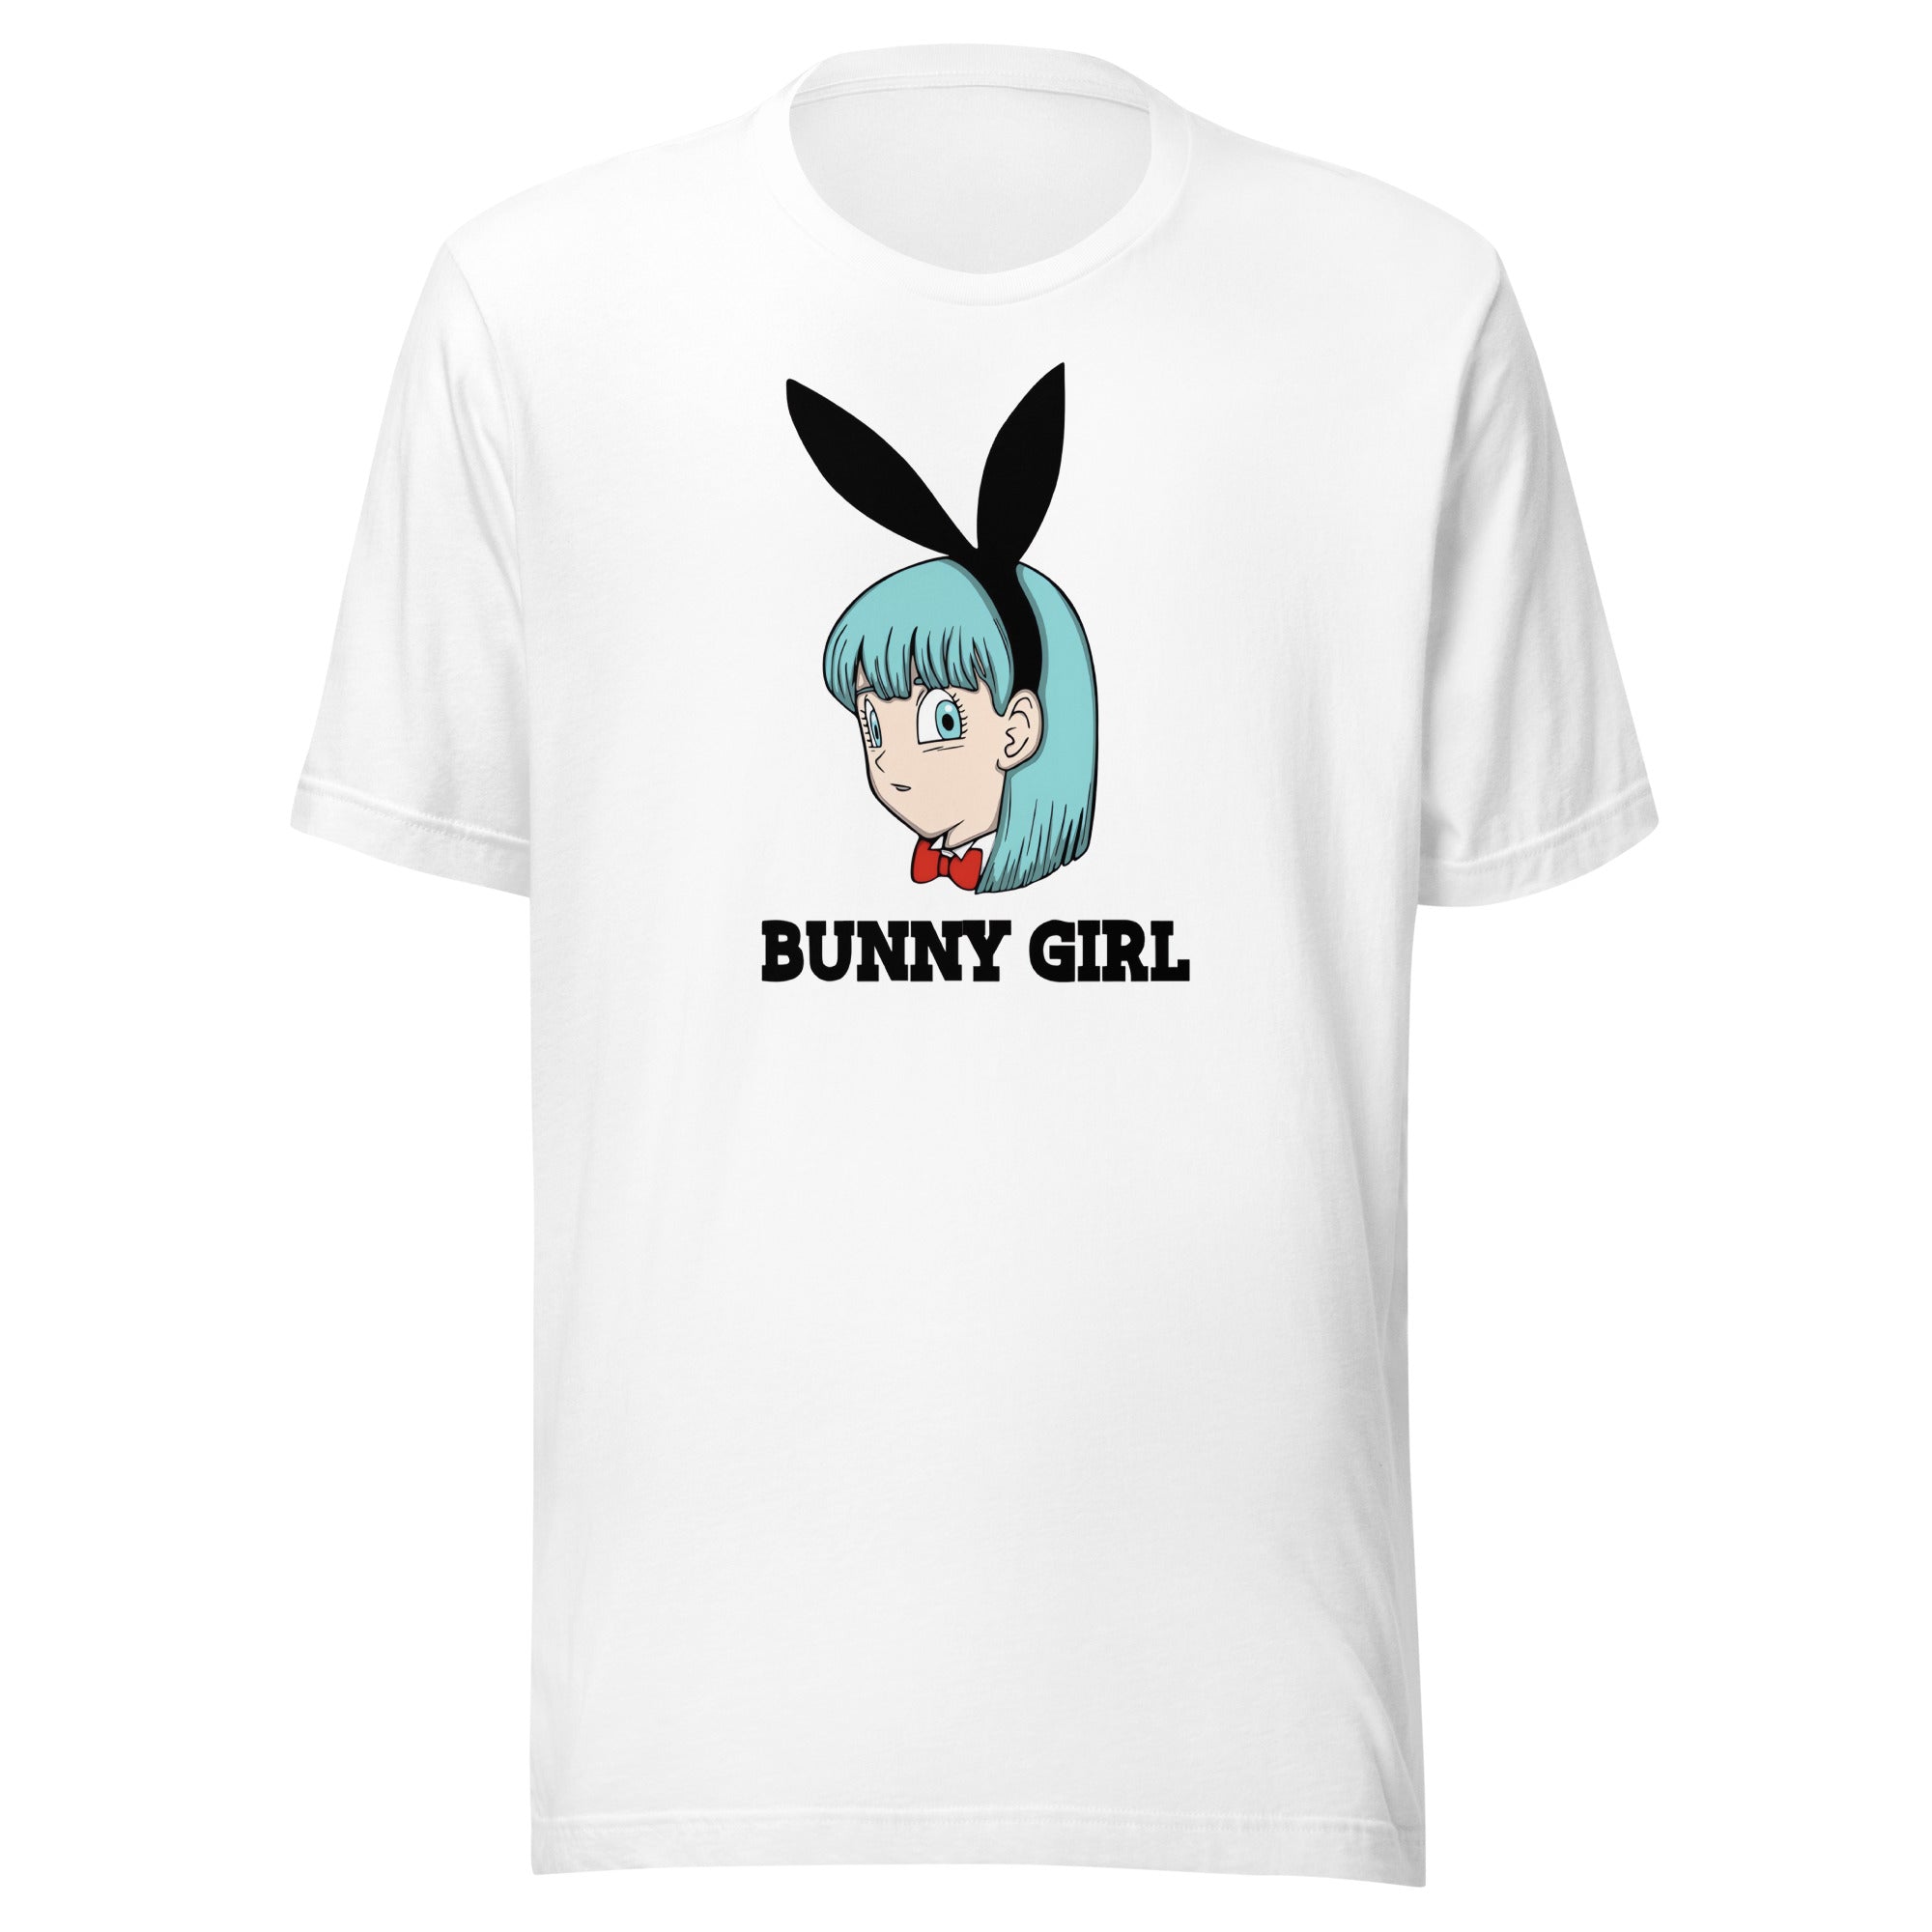 ¡Compra el mejor merchandising en Superstar! Encuentra diseños únicos y de alta calidad, Playera de Bunny Girl